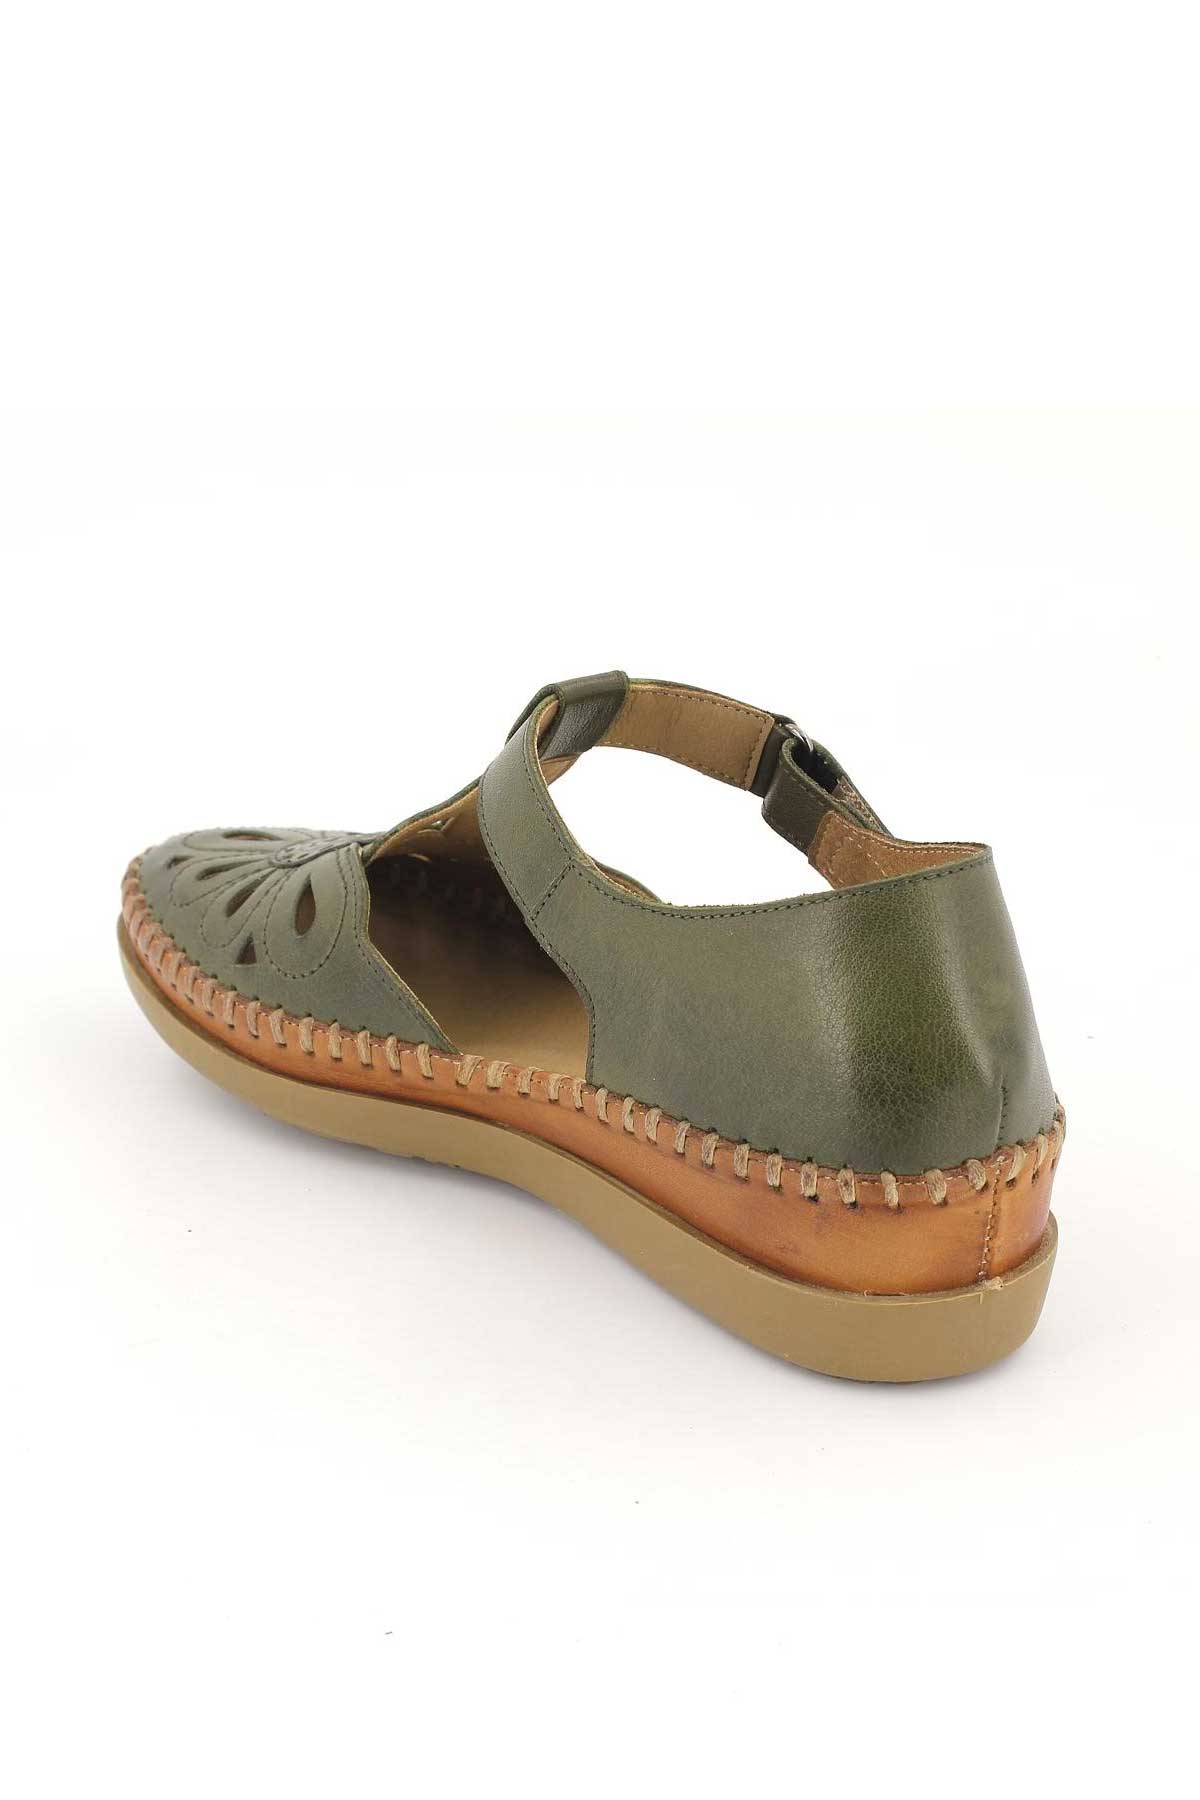 Kadın Comfort Sandalet Yeşil 18793505 - Thumbnail